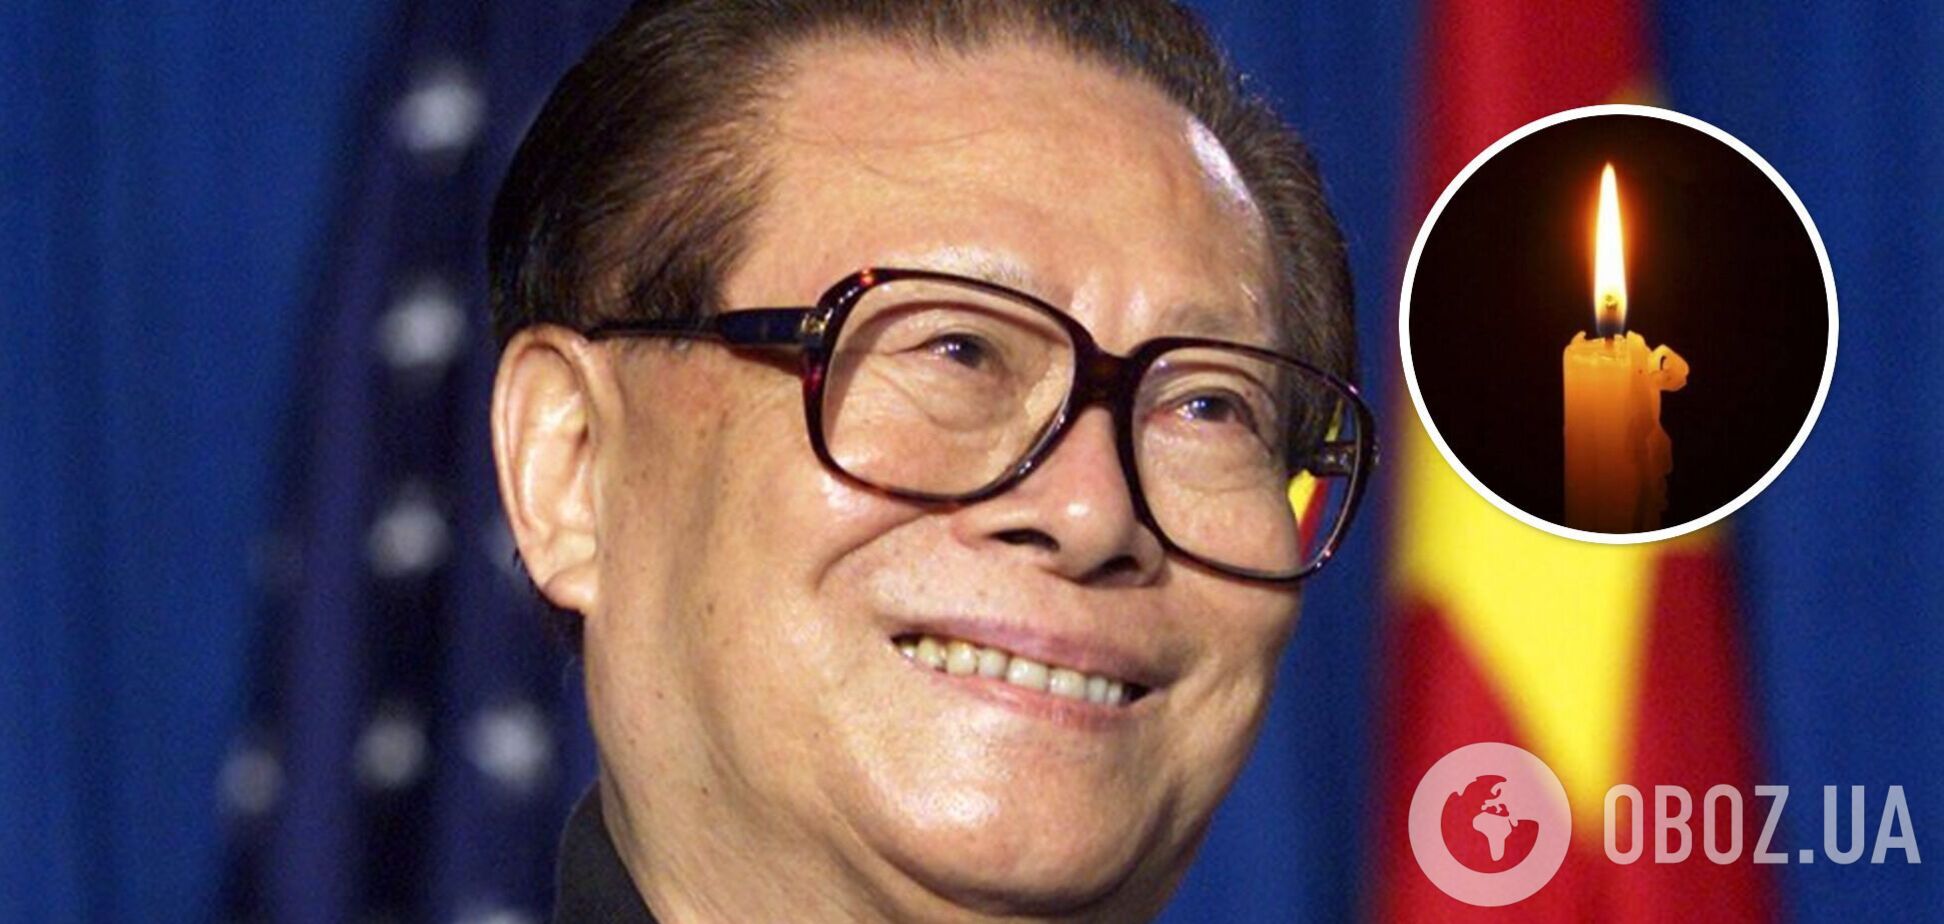 Умер экс-глава Китая Цзян Цзэминь, желавший 'мирного воссоединения' КНР и Тайваня